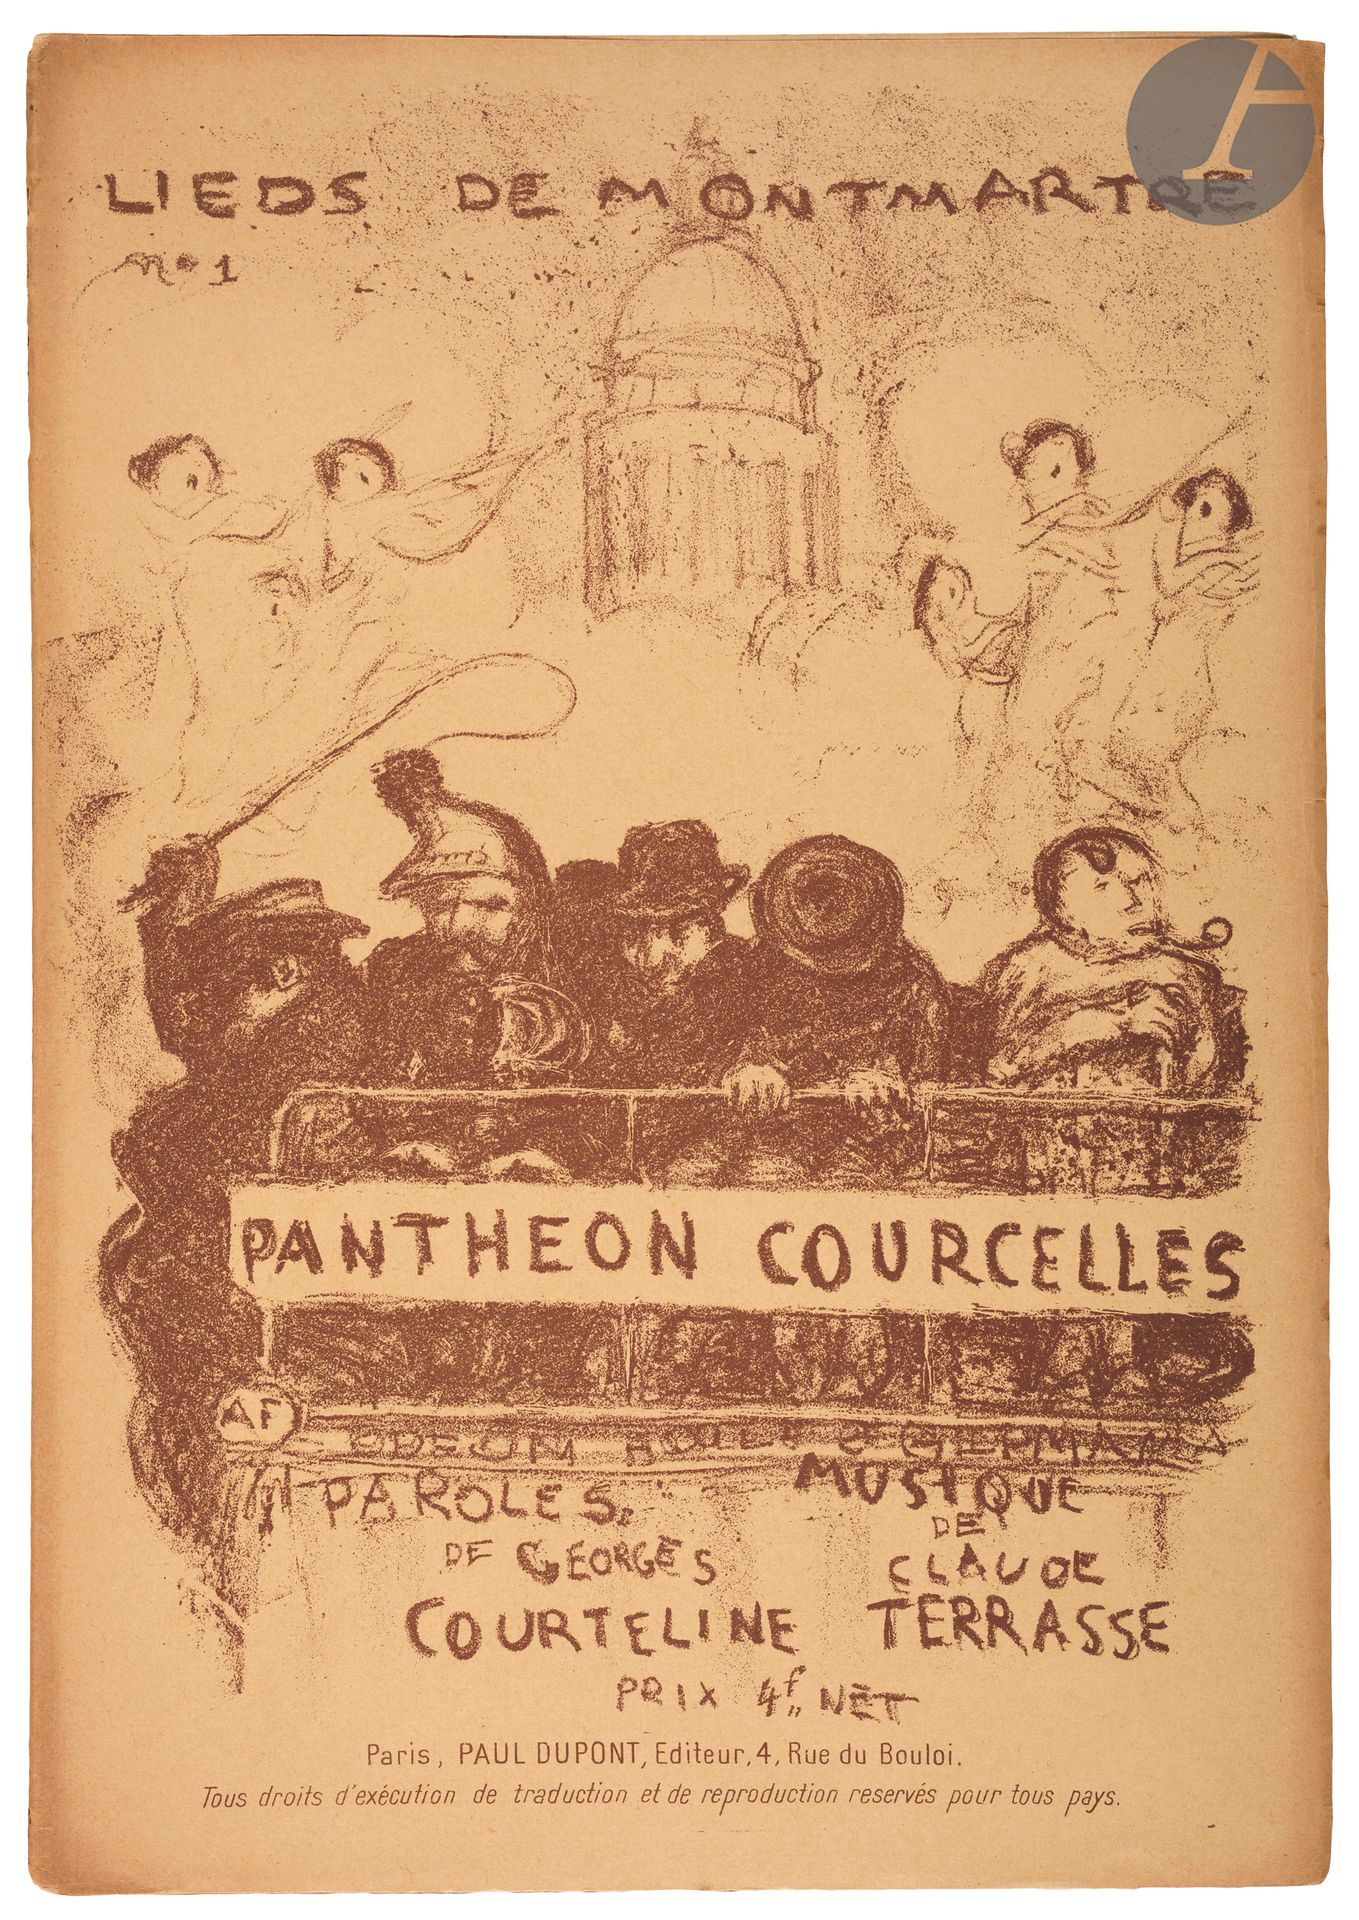 Null 
*Pierre Bonnard (1867-1947) 


Panthéon-Courcelles (Lieds de Montmartre, n&hellip;